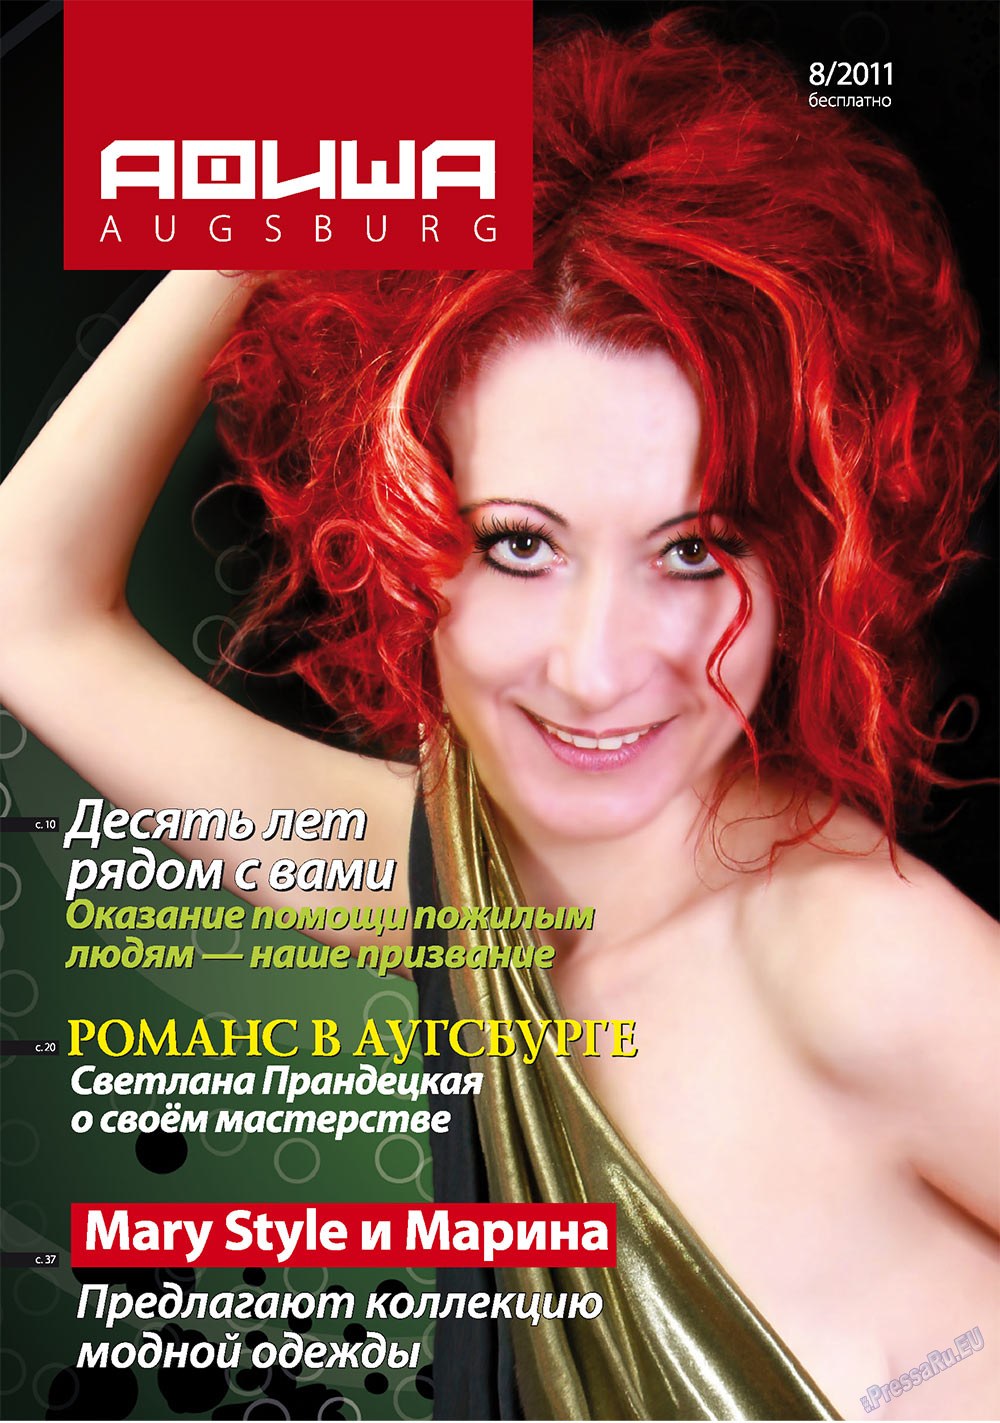 Афиша Augsburg (журнал). 2011 год, номер 8, стр. 1